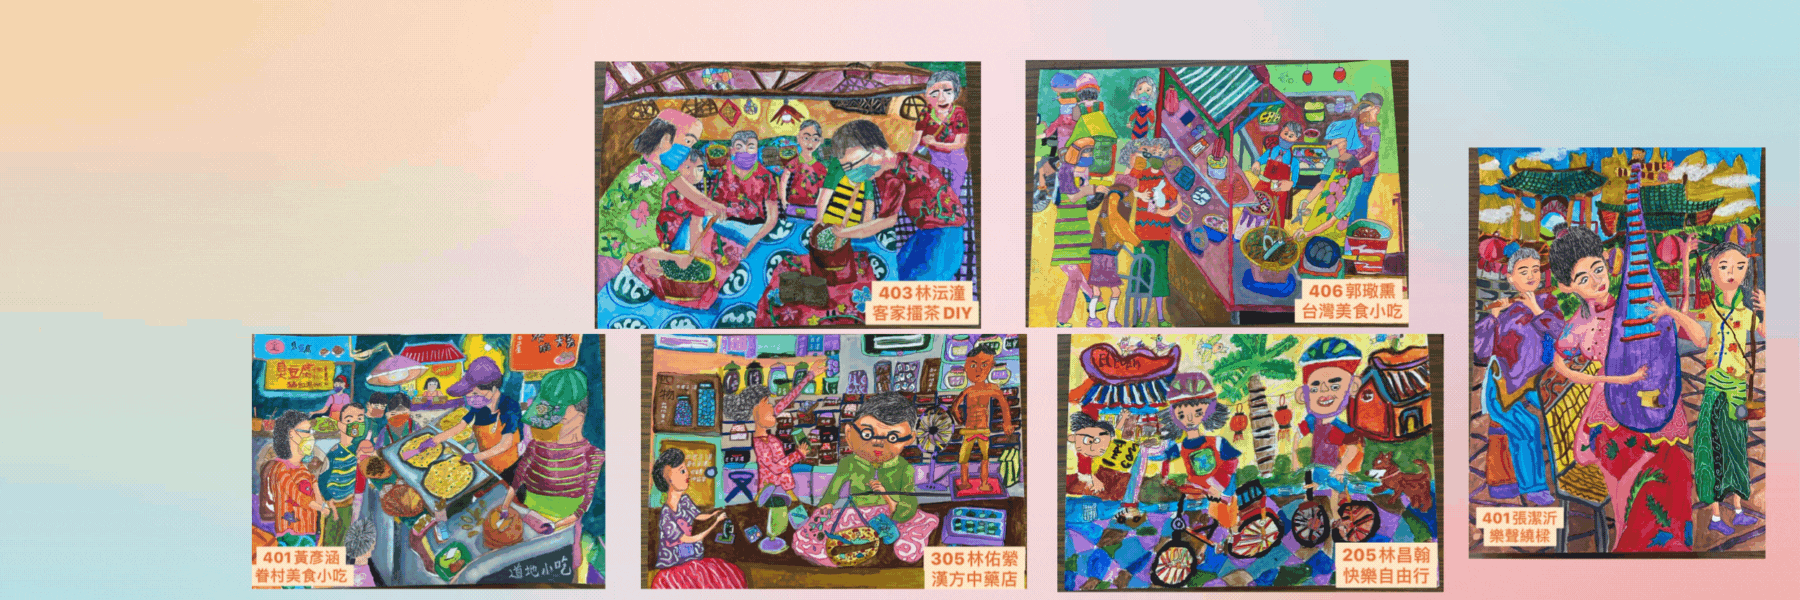 賀! 本校學生參加第54屆世界兒童畫展臺中市徵集活動--成績亮眼!